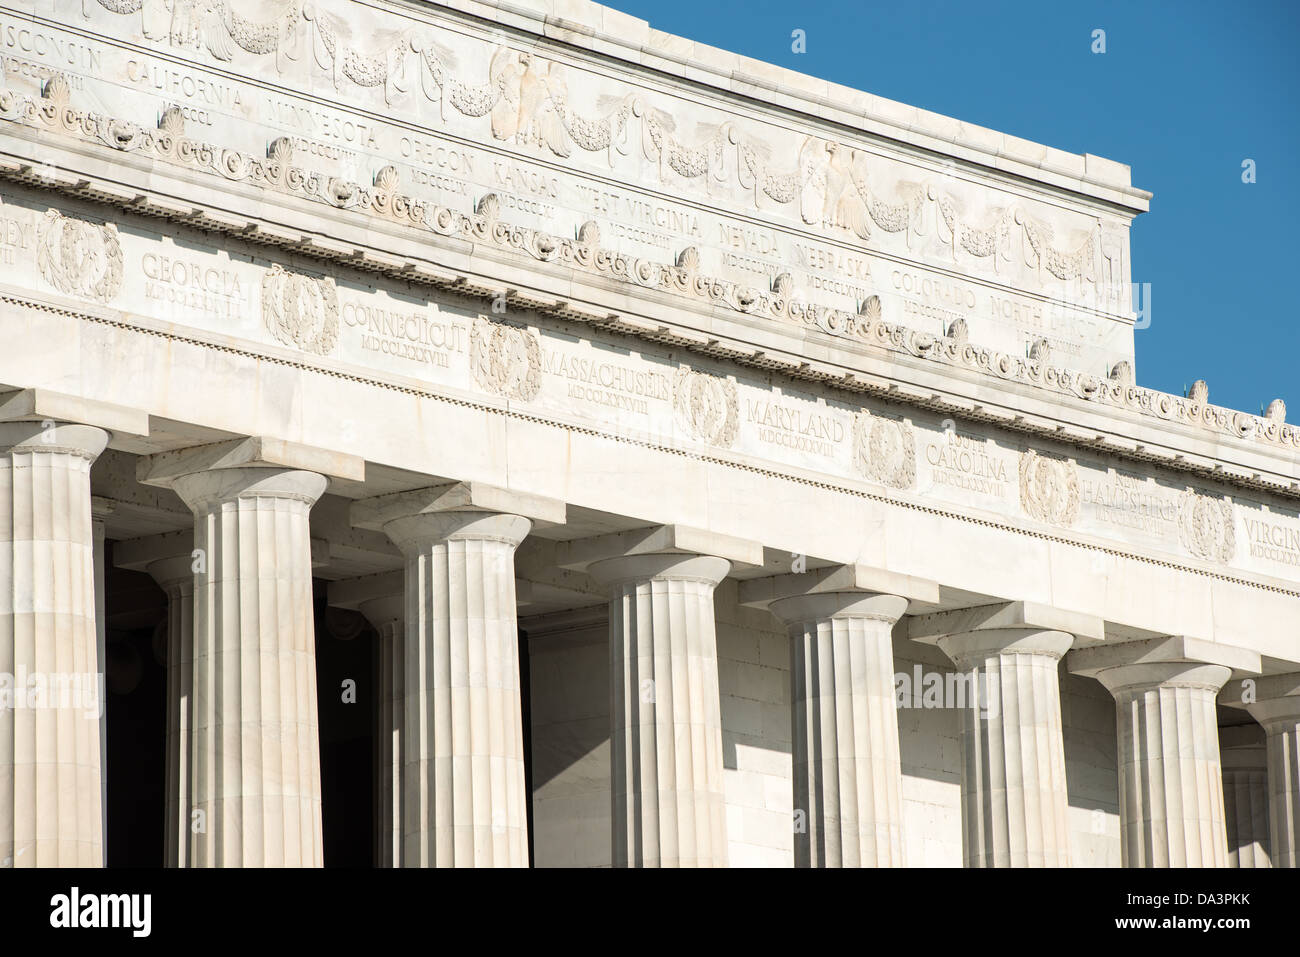 WASHINGTON DC, Stati Uniti d'America - Dettaglio di alcuni esterni del Lincoln Memorial a Washington DC, con i nomi degli stati degli Stati Uniti attaccato intorno alla parte superiore del memorial. Foto Stock